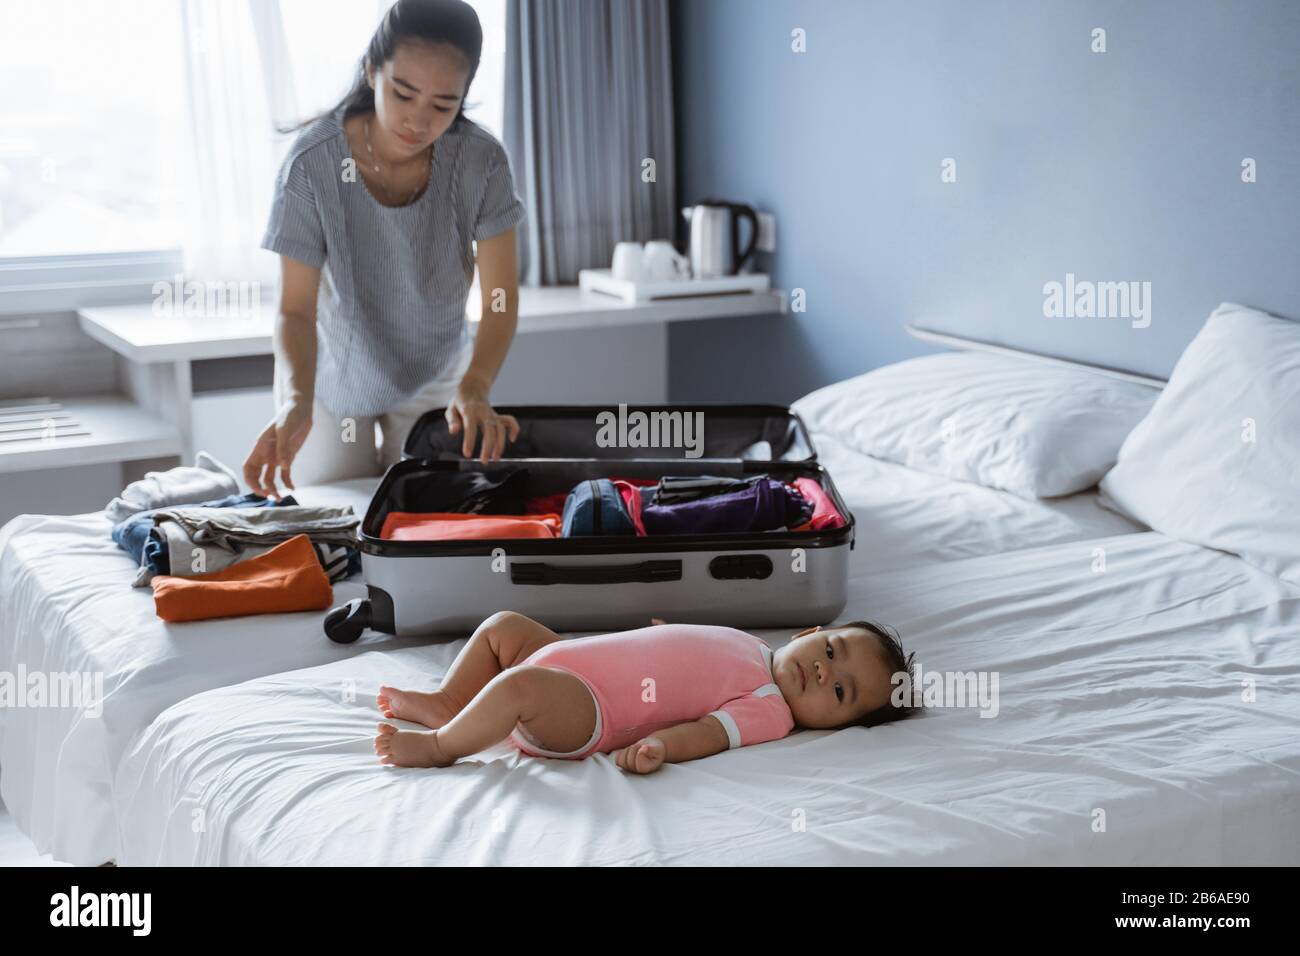 Baby liegt auf dem Bett, wenn seine Mutter seine Kleidung in einen Koffer legt, bevor sie in den Urlaub geht Stockfoto